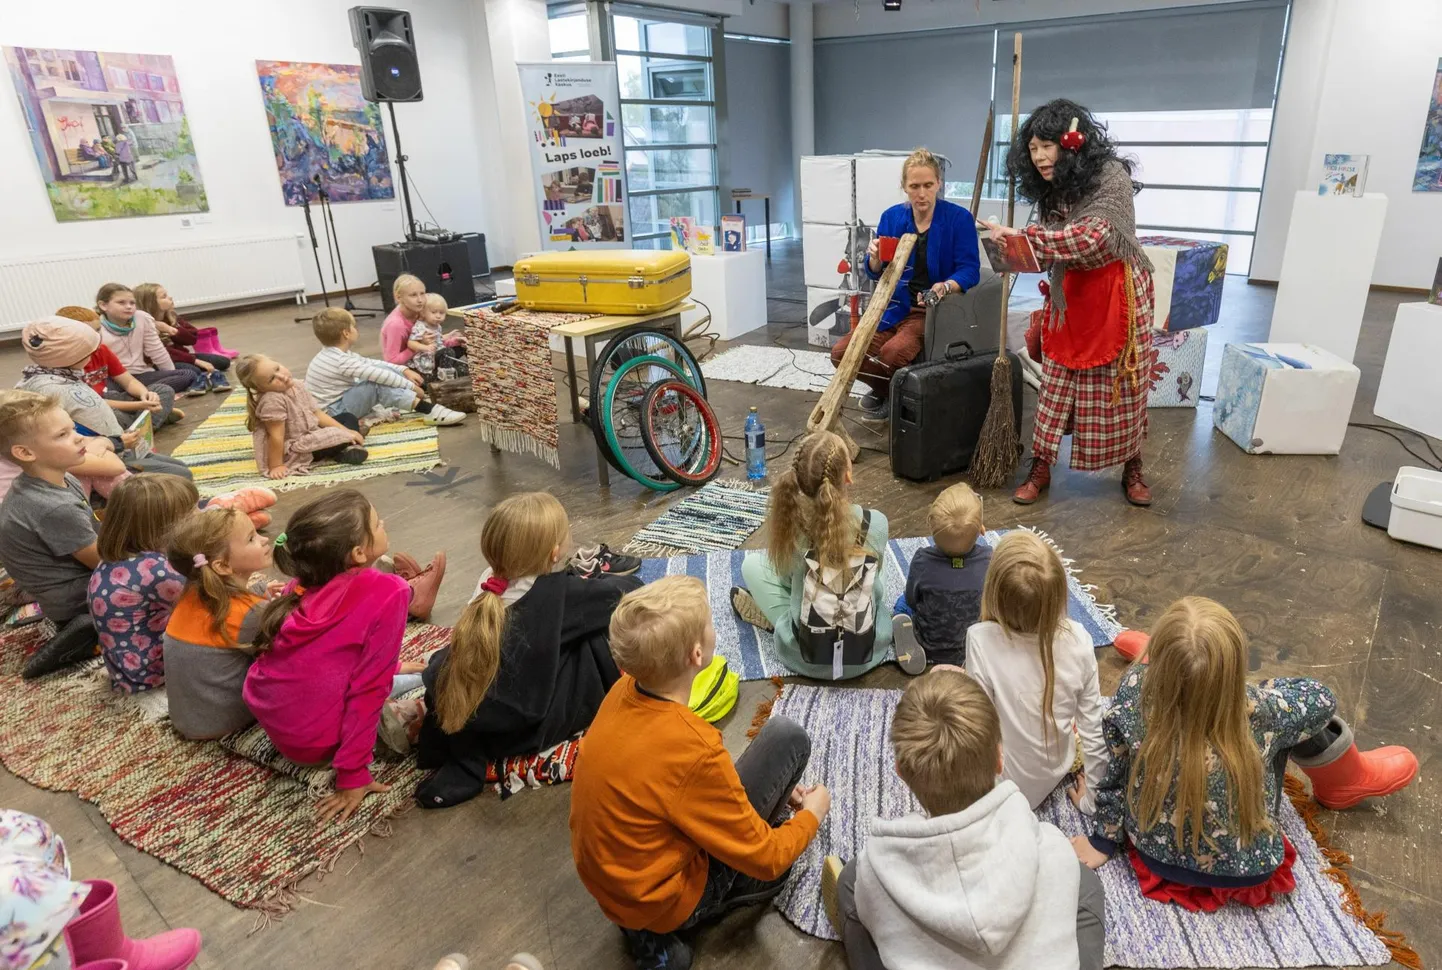 Viljandi linnaraamatukokku on teretulnud nii väikesed kui suured. Pildil on üle-eestilise laste ja noorte kirjandusfestivali Luup avamine mullu sügisel.
 